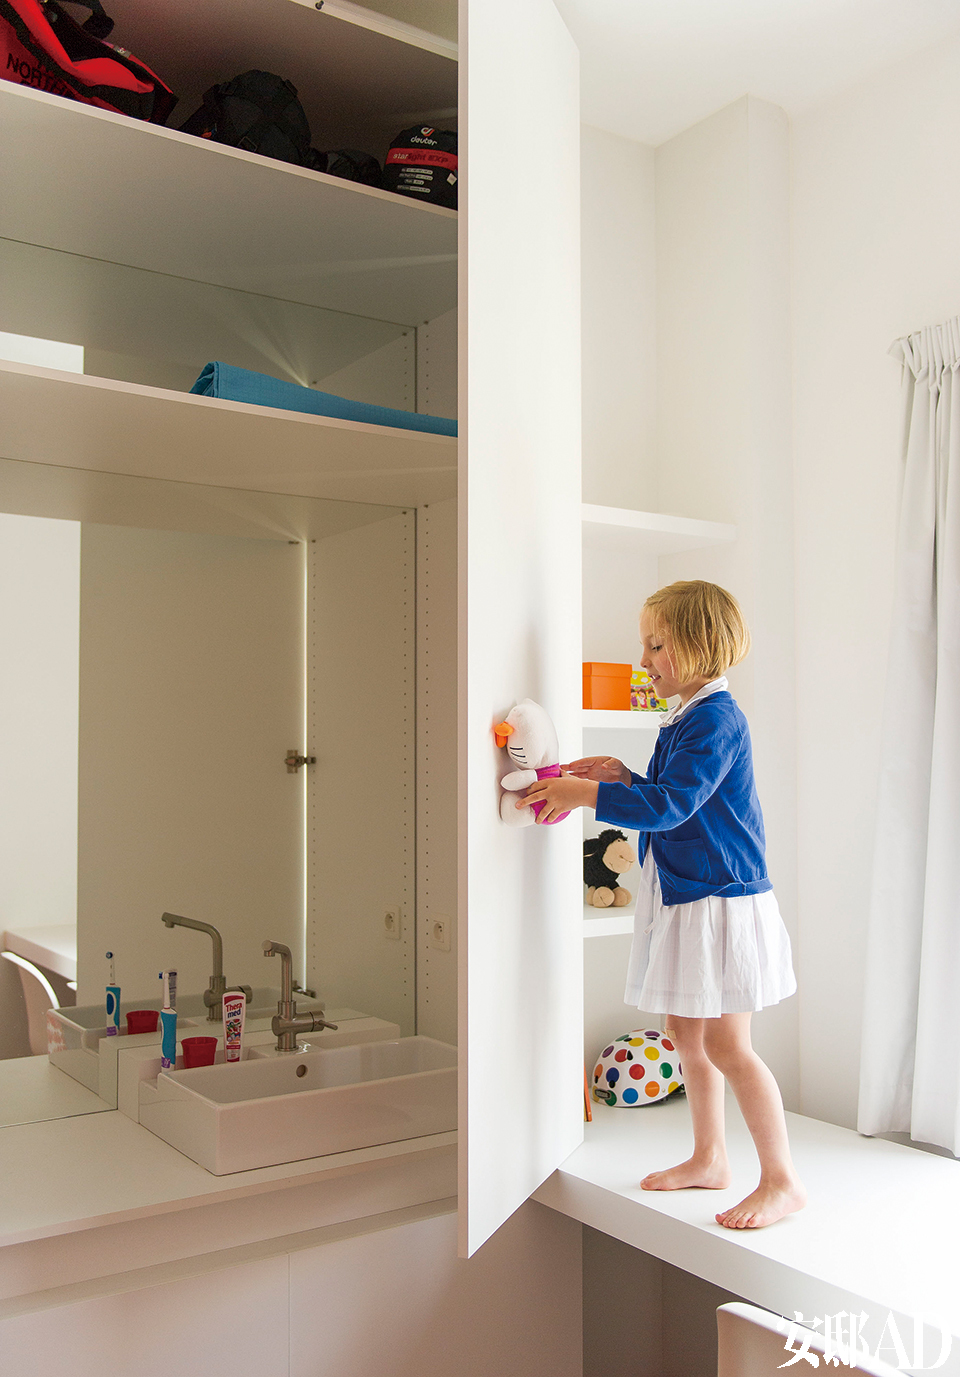 壁龛里是Julia最爱的玩具。水池和镜子都藏在柜子后。